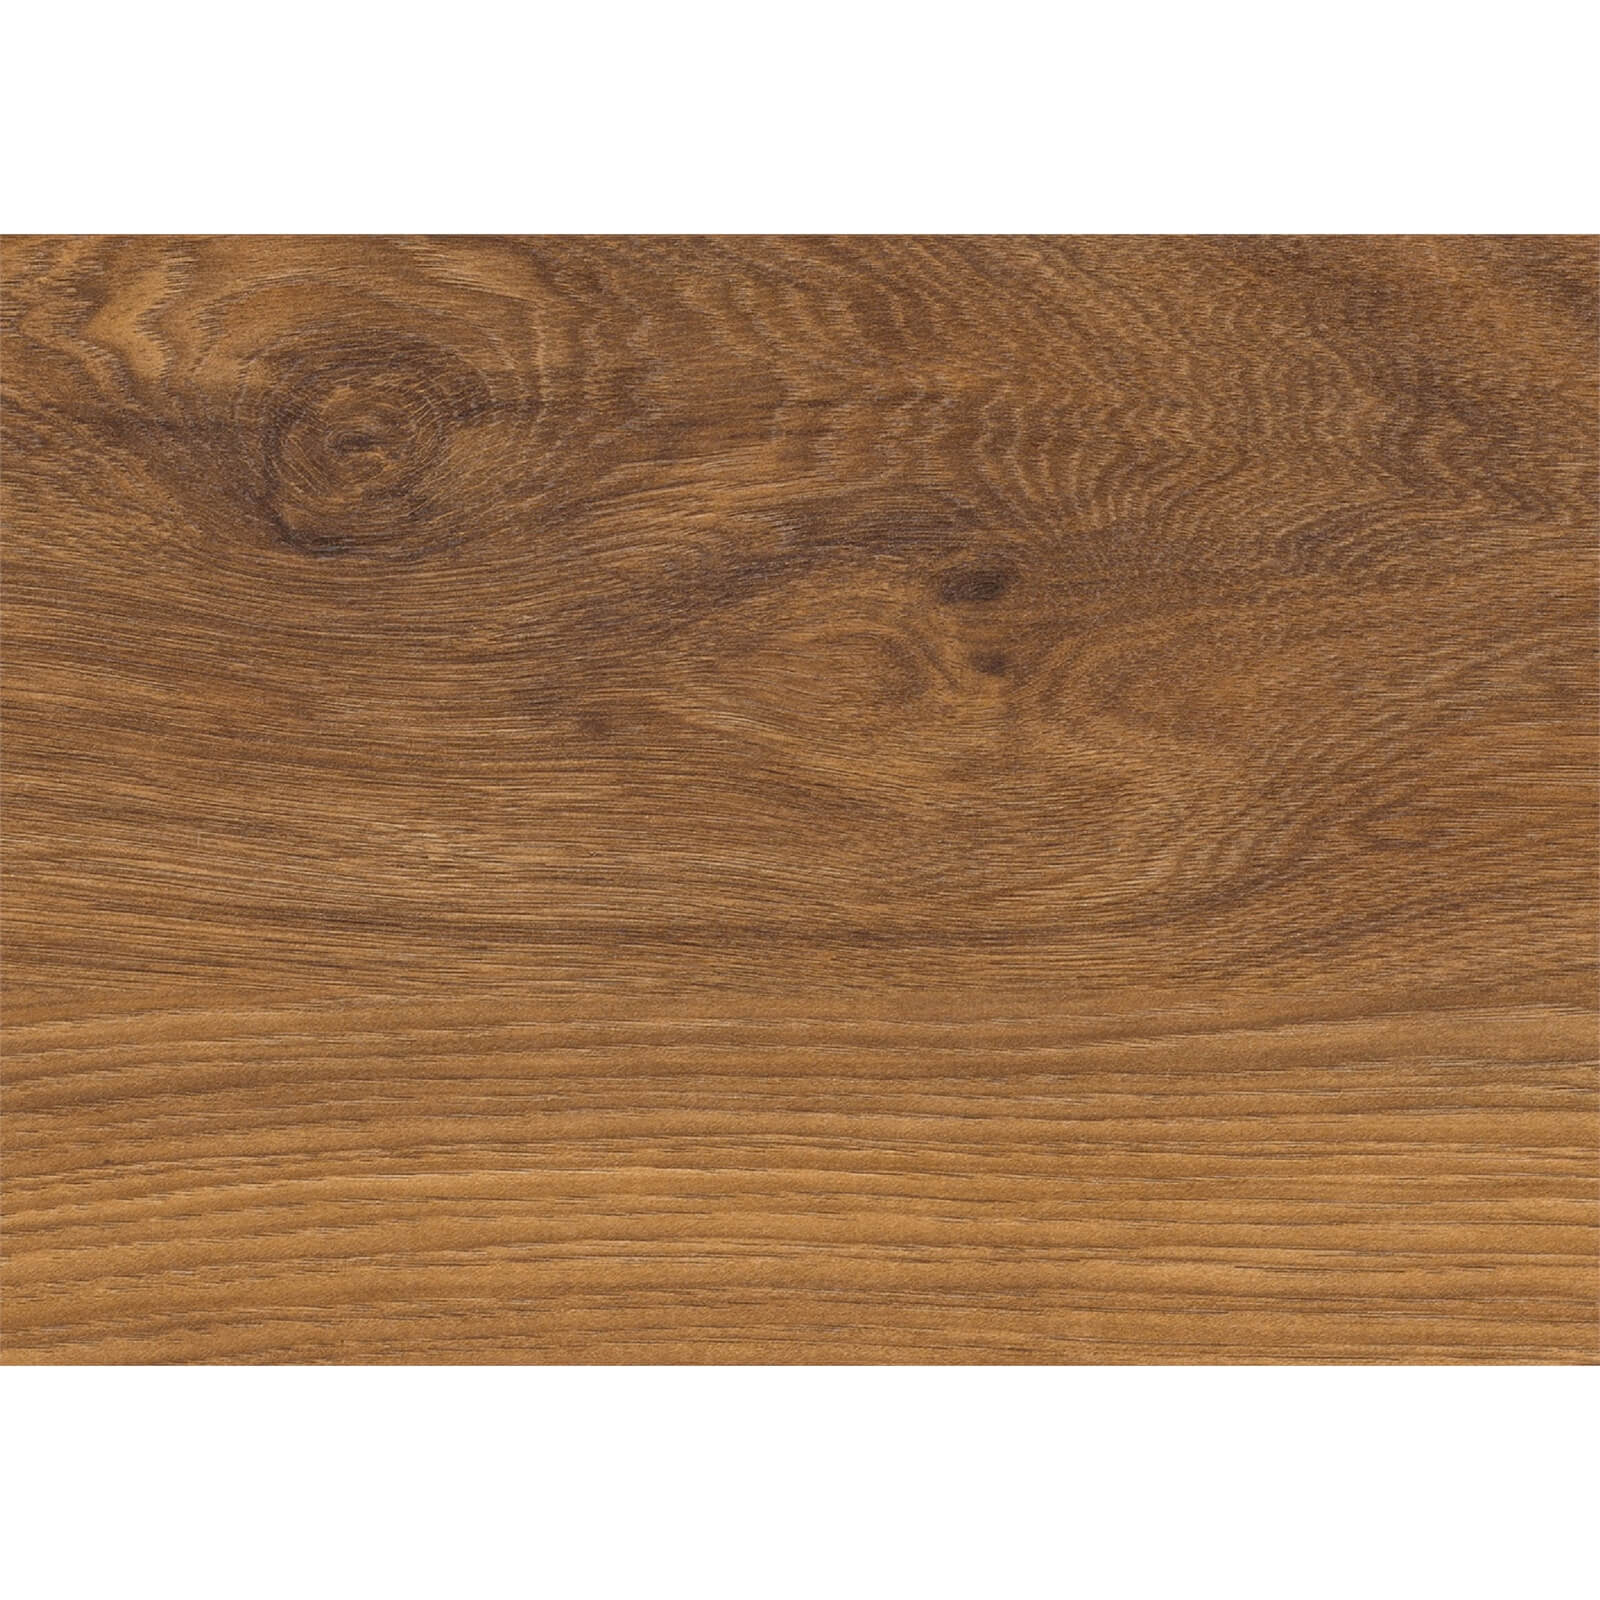 Appalachian Oak Laminate Flooring Sample Board